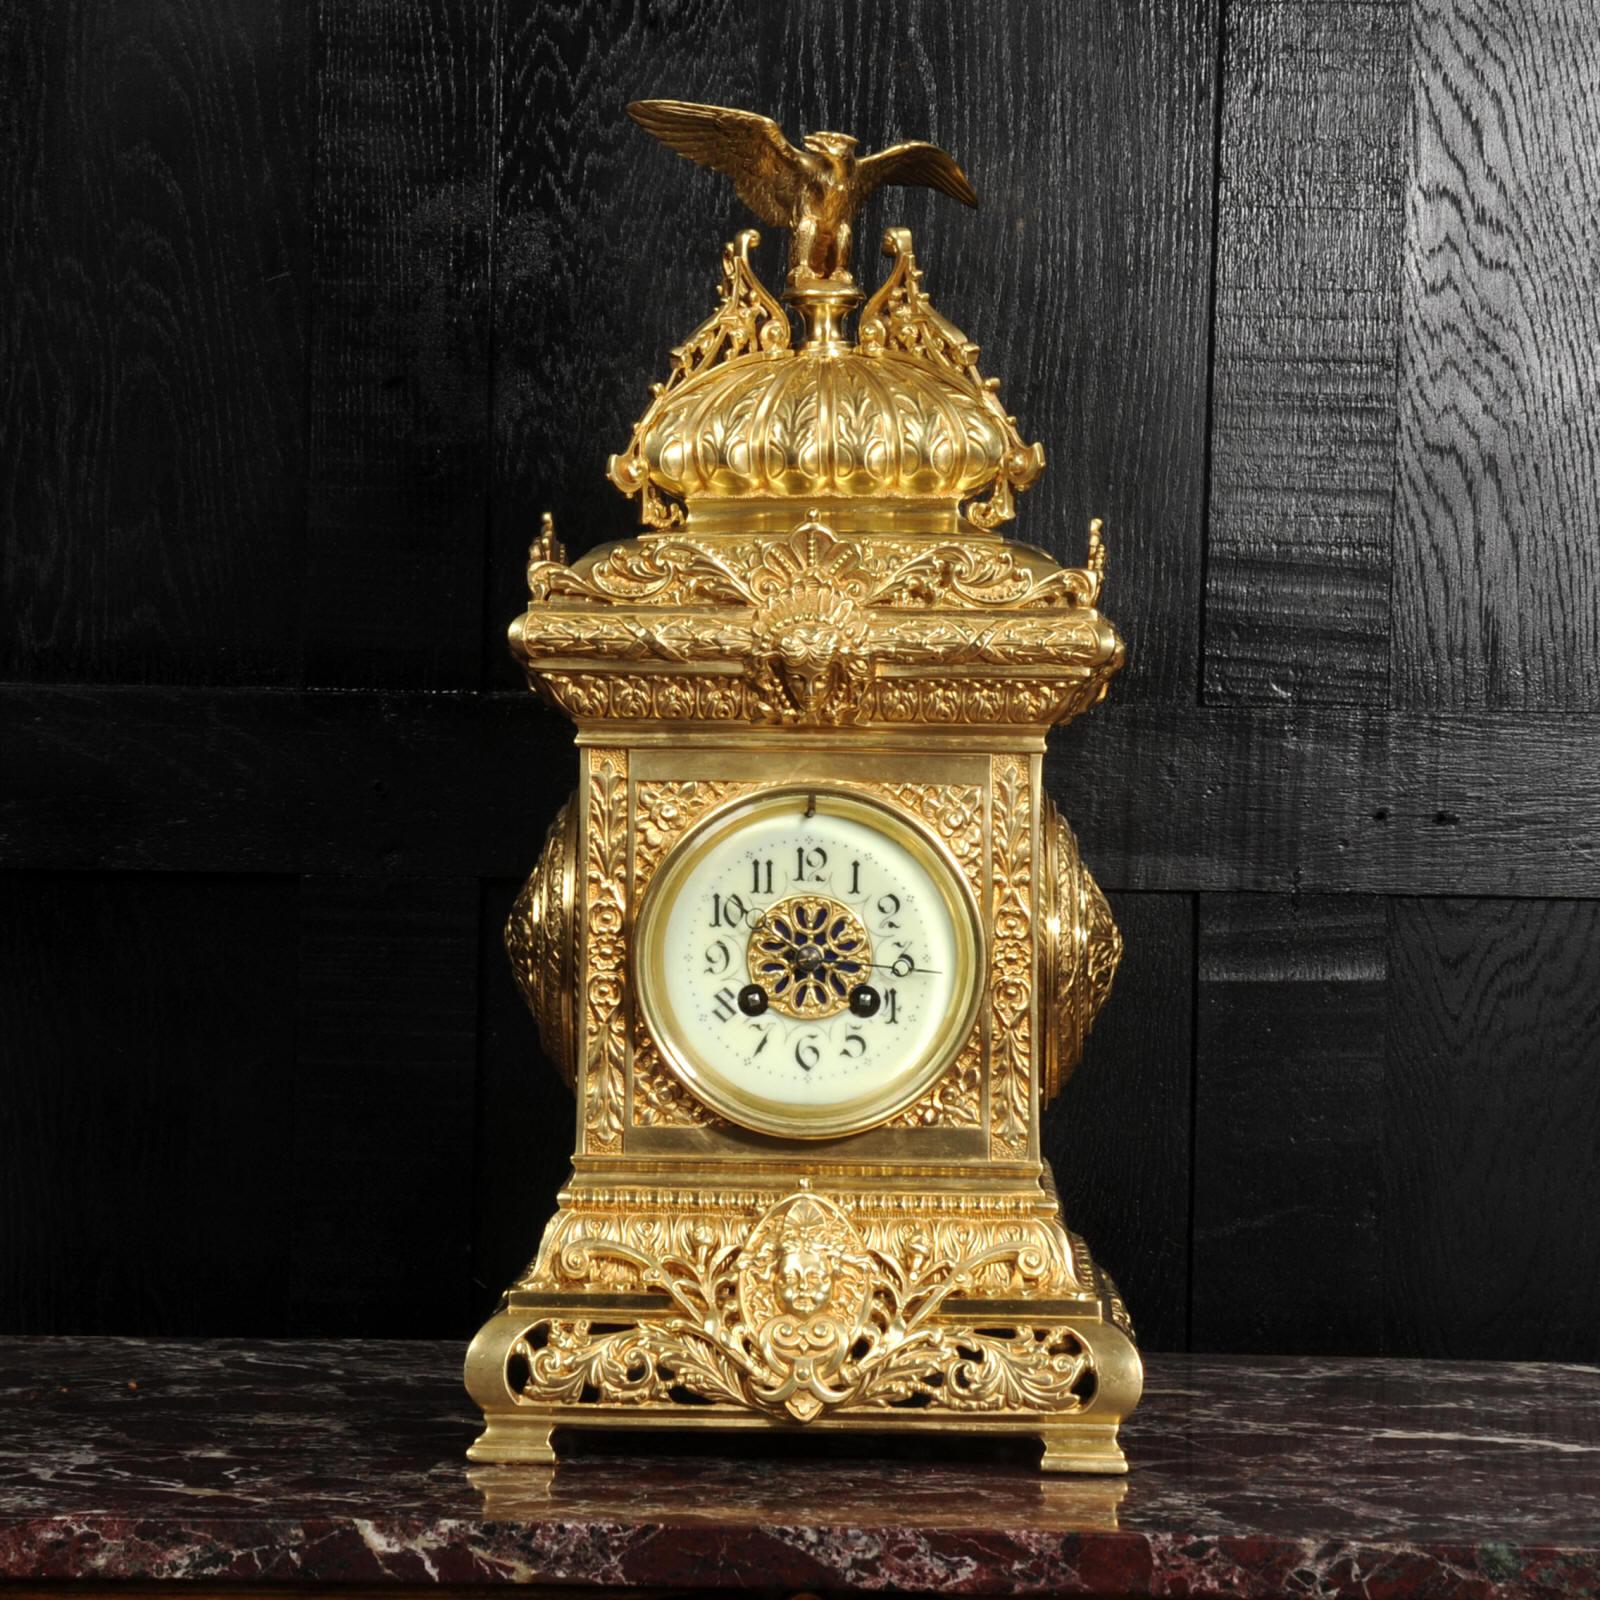 Impresionante reloj de sobremesa original francés antiguo de gran tamaño. Es de estilo clásico y presenta un águila bellamente modelada sentada en la parte superior en forma de cojín. La caja está decorada con hojas de acanto y redondeles de acanto